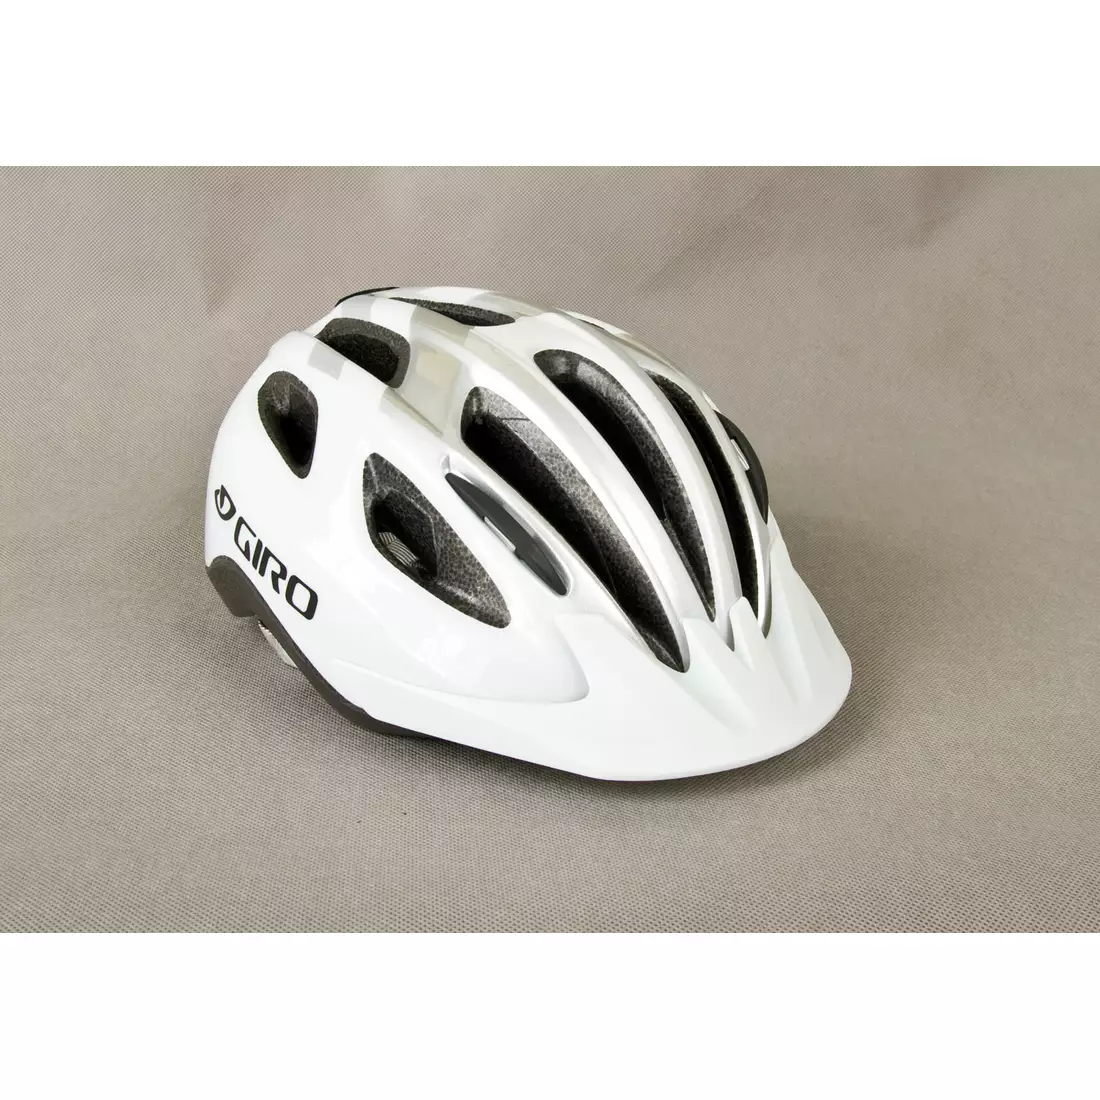 GIRO SKYLINE II kerékpáros sisak fehér ezüst